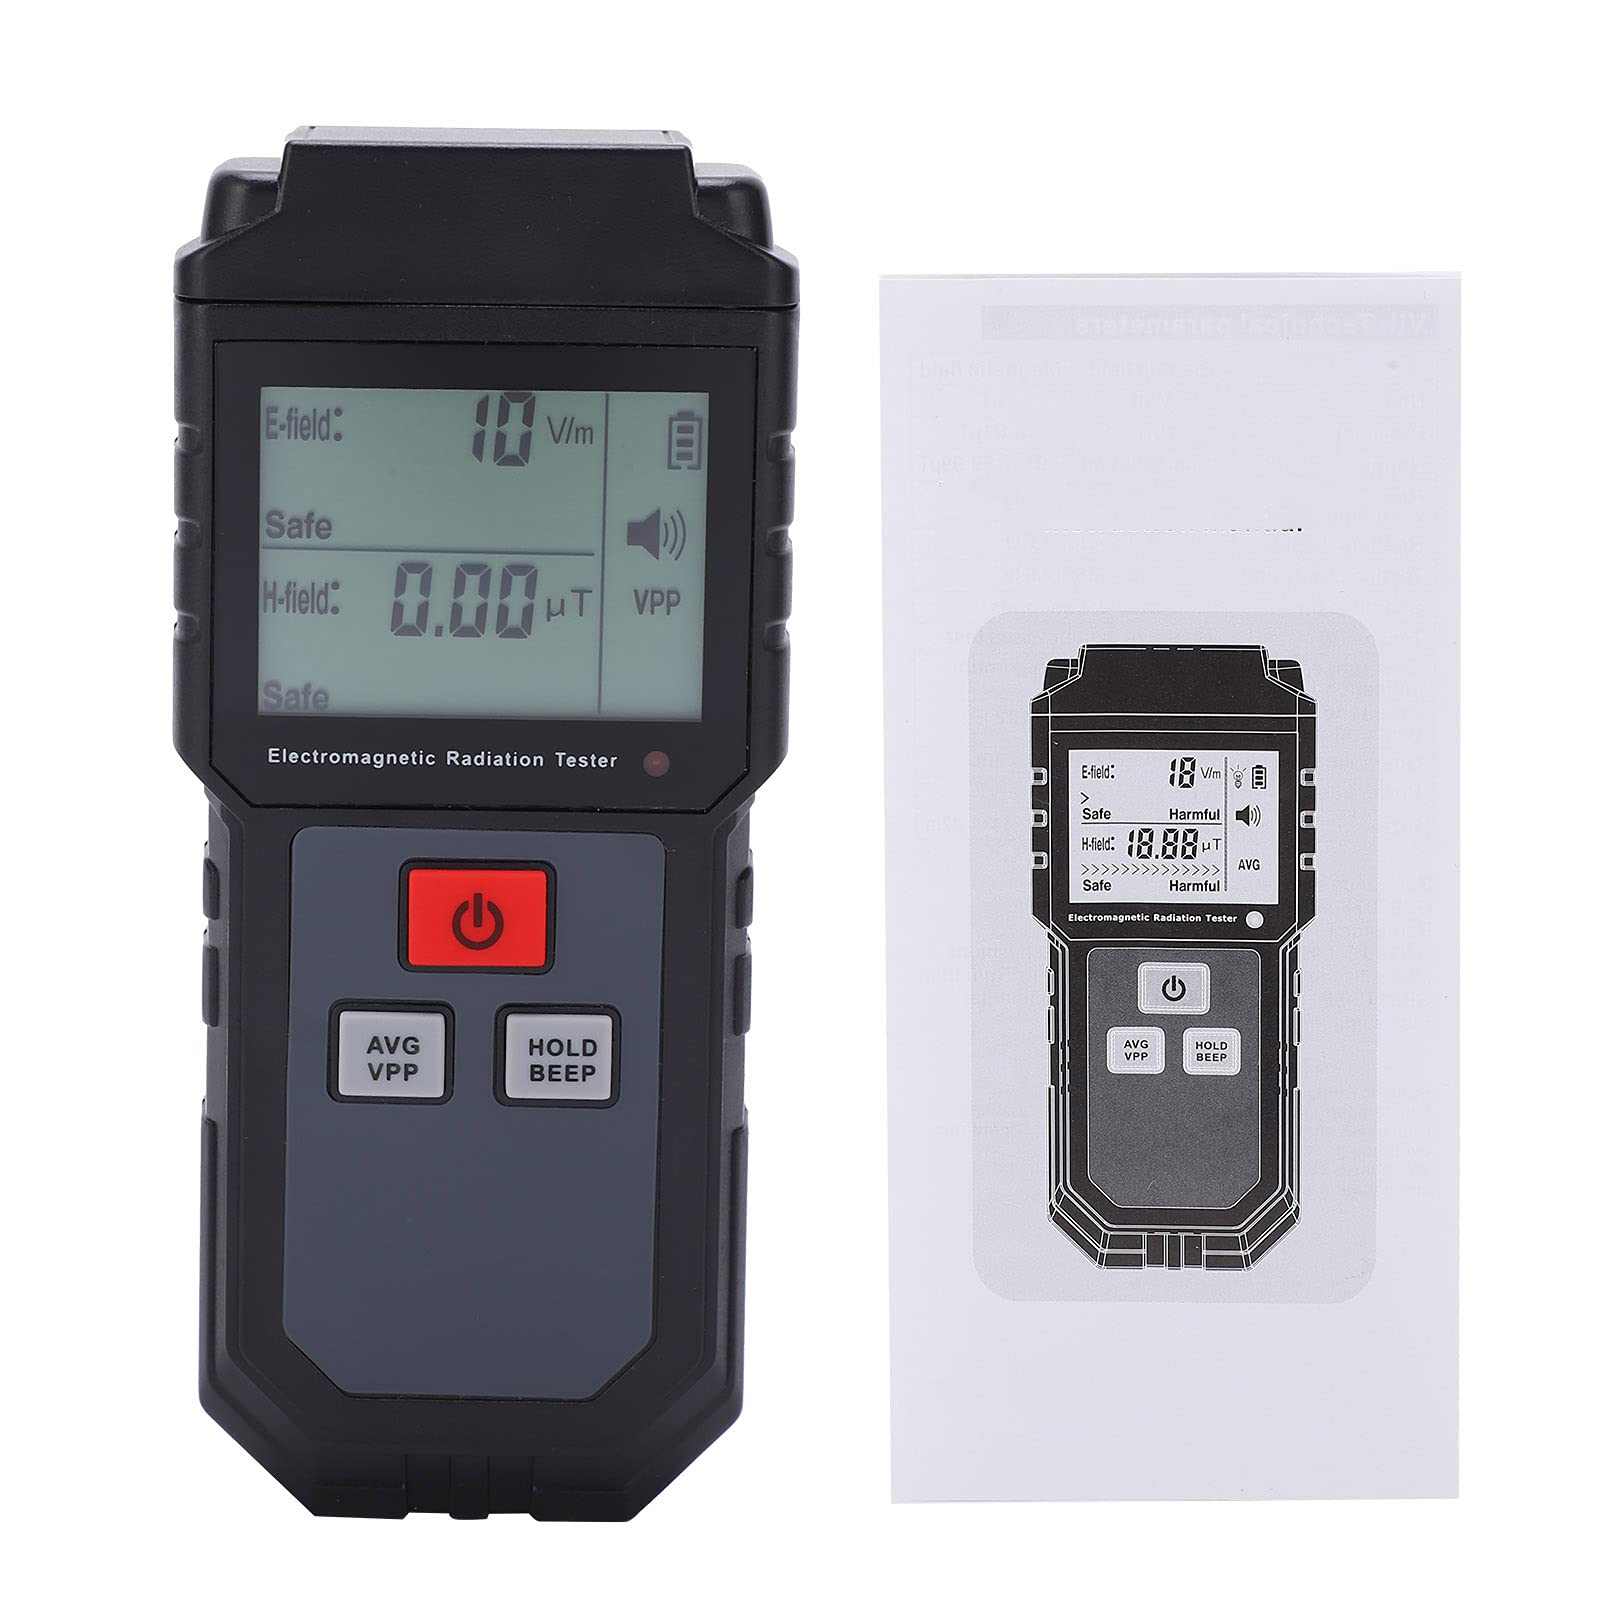 EMF-Messgerät, 5 Hz – 3500 MHz, EMF-Detektor, Digitaler Strahlungsdetektor für Elektromagnetische Felder, Tragbarer Digitaler LCD-EMF-Detektor, Ton-Licht-Alarm, Großartiger Tester für EMF-Inspektionen